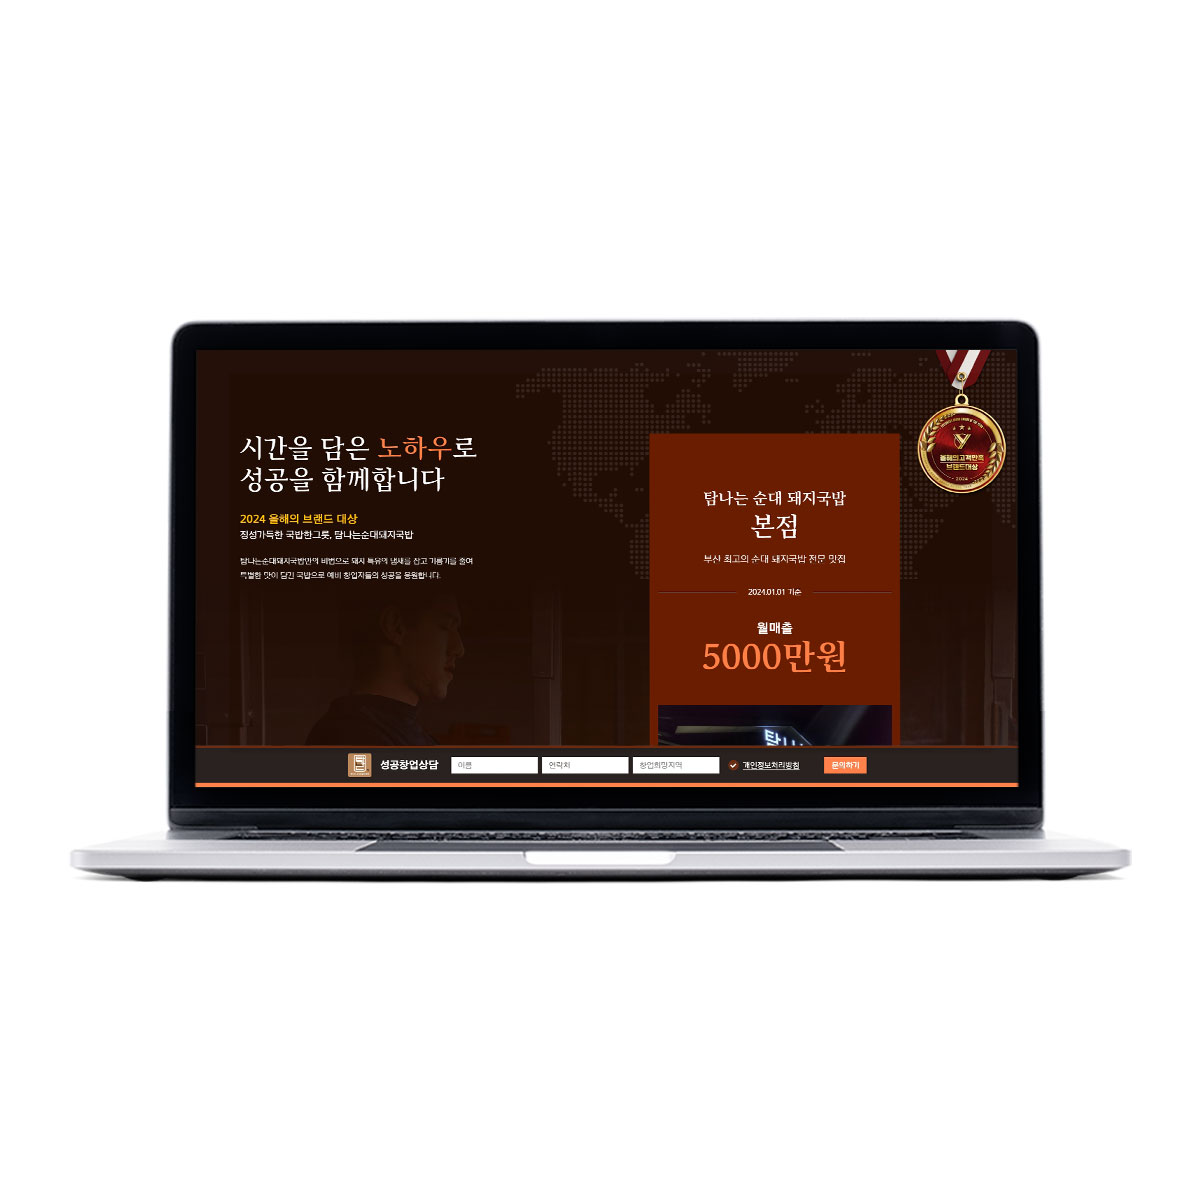 탐나는순대돼지국밥 프랜차이즈 홈페이지 제작